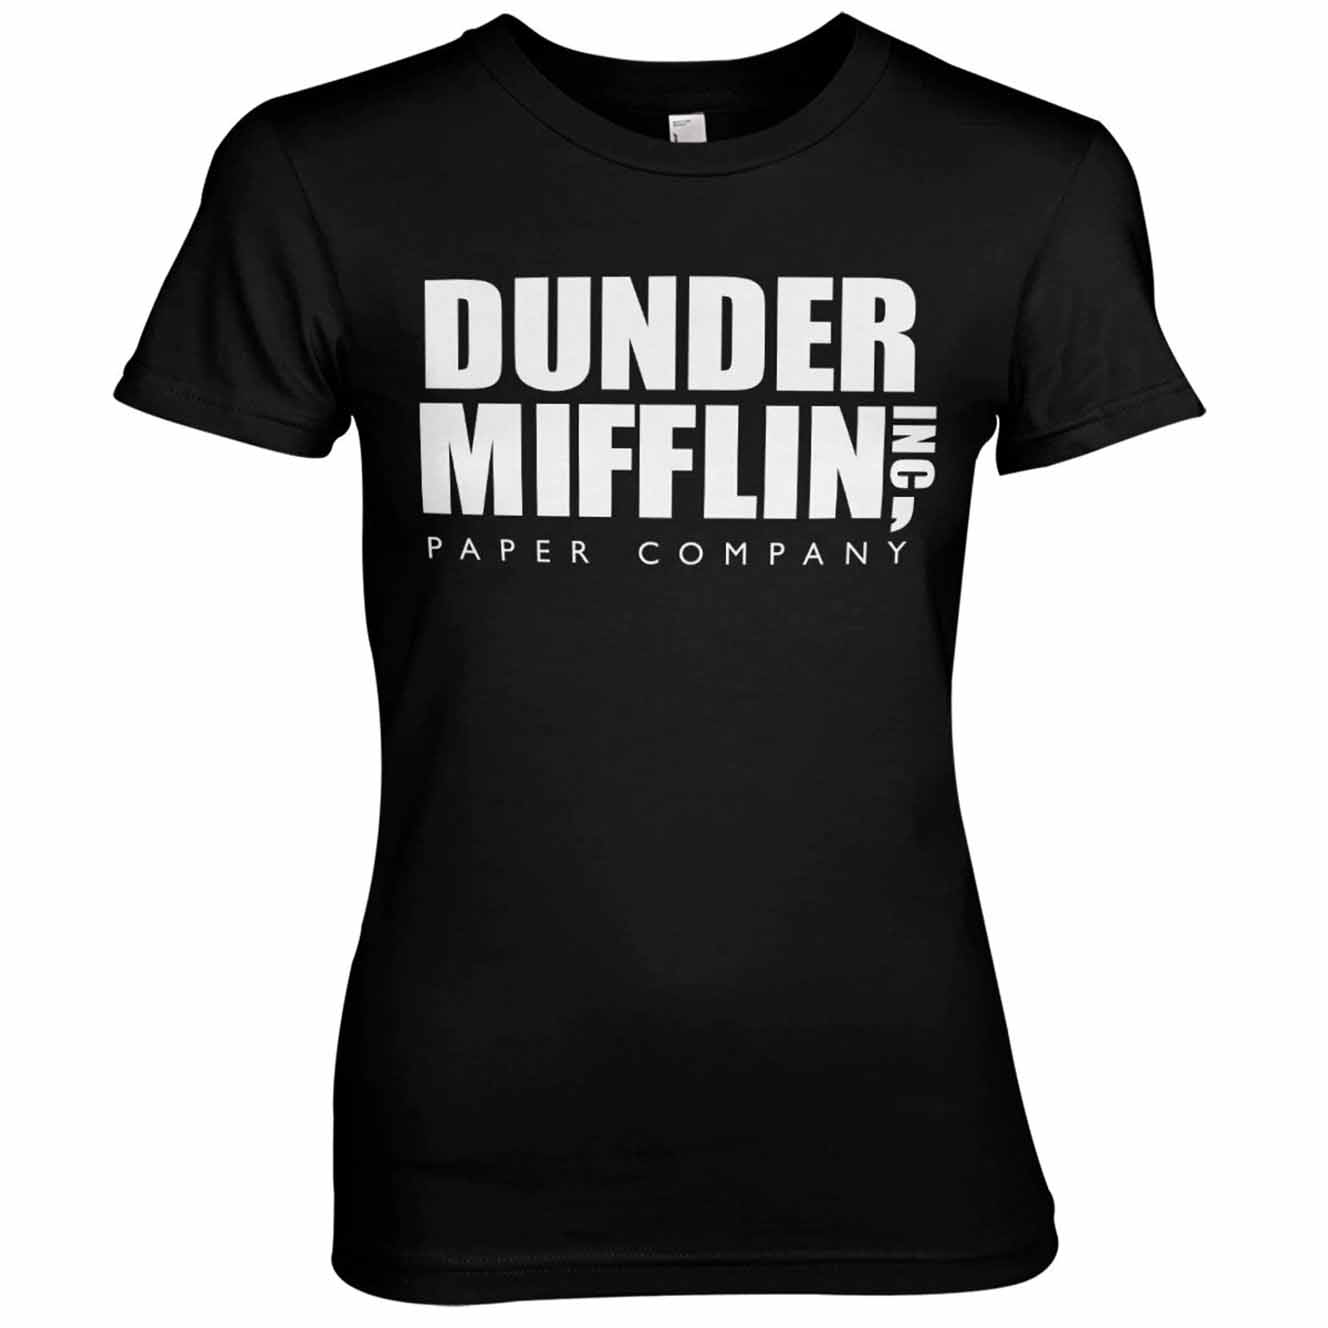 The Office Dunder Mifflin Women's T-shirt